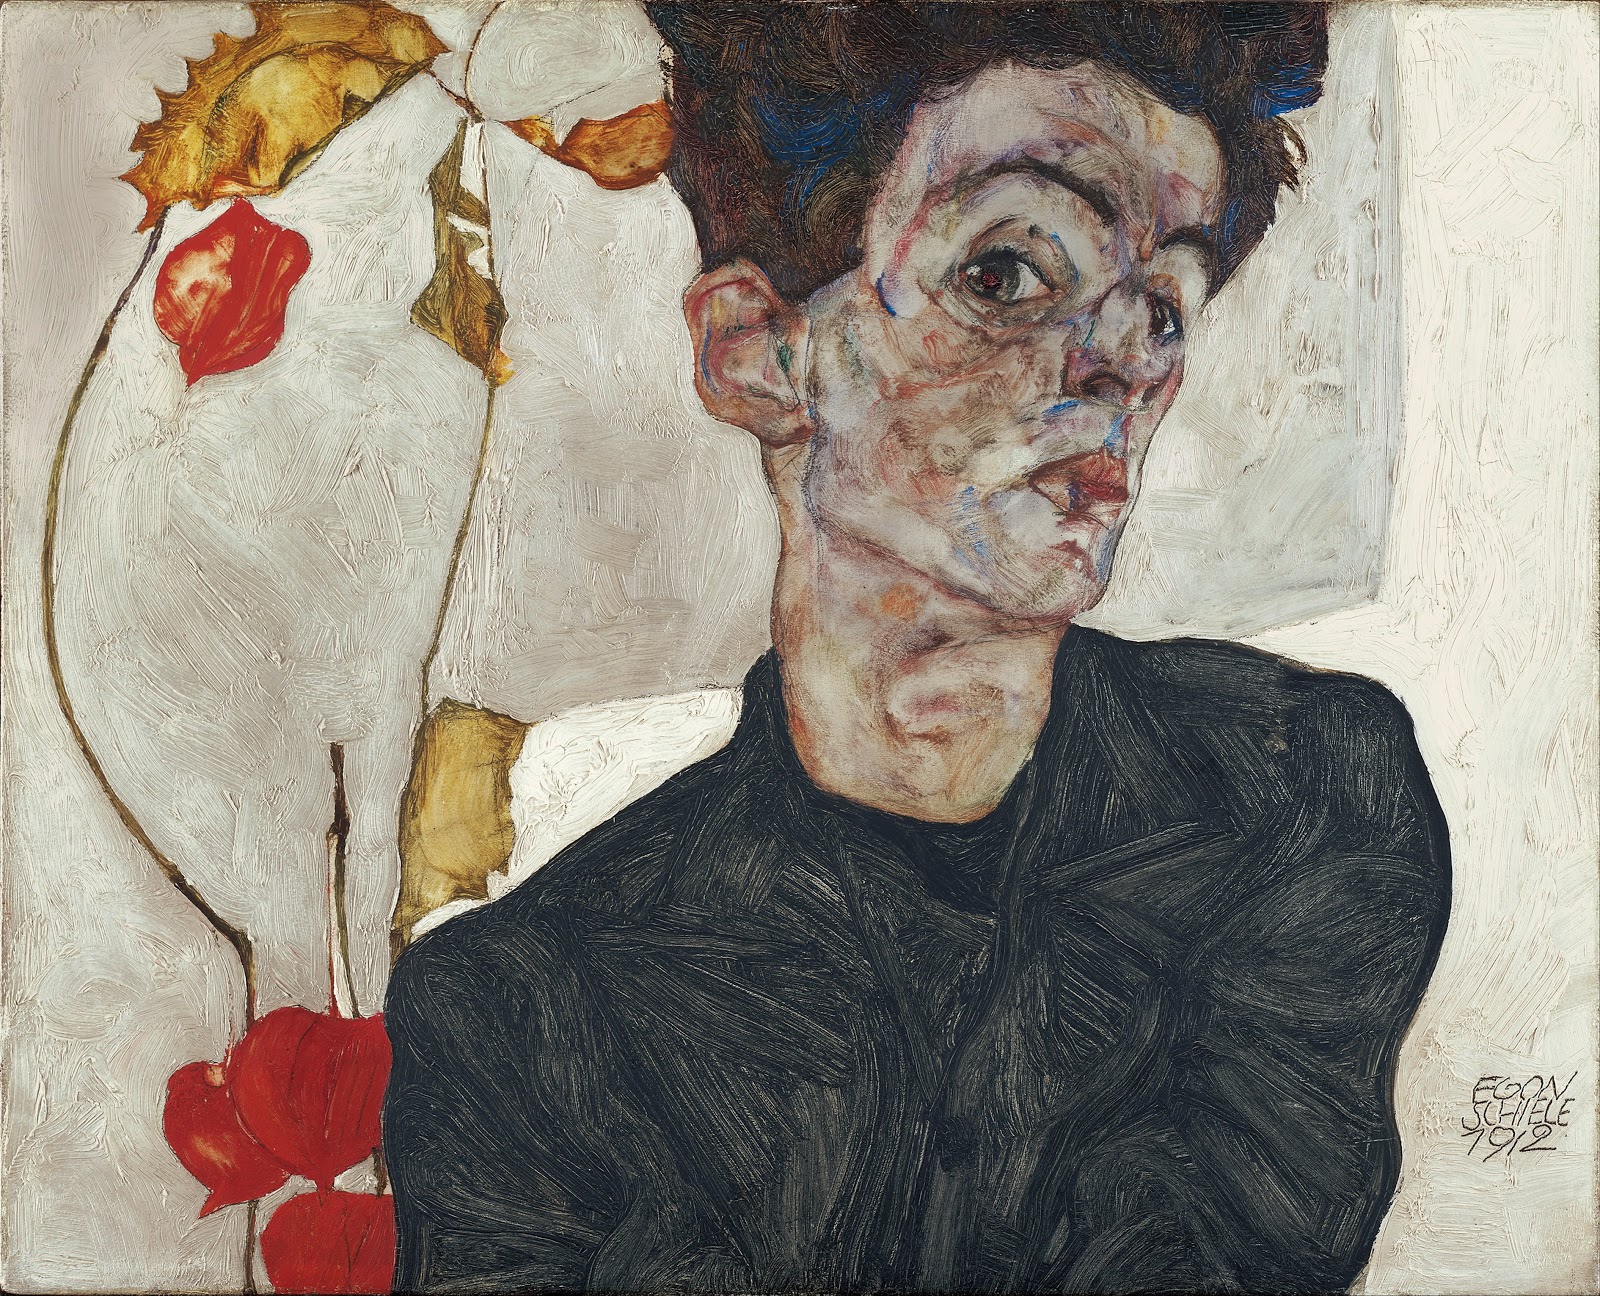 Egon+Schiele-1890-1918 (72).jpg